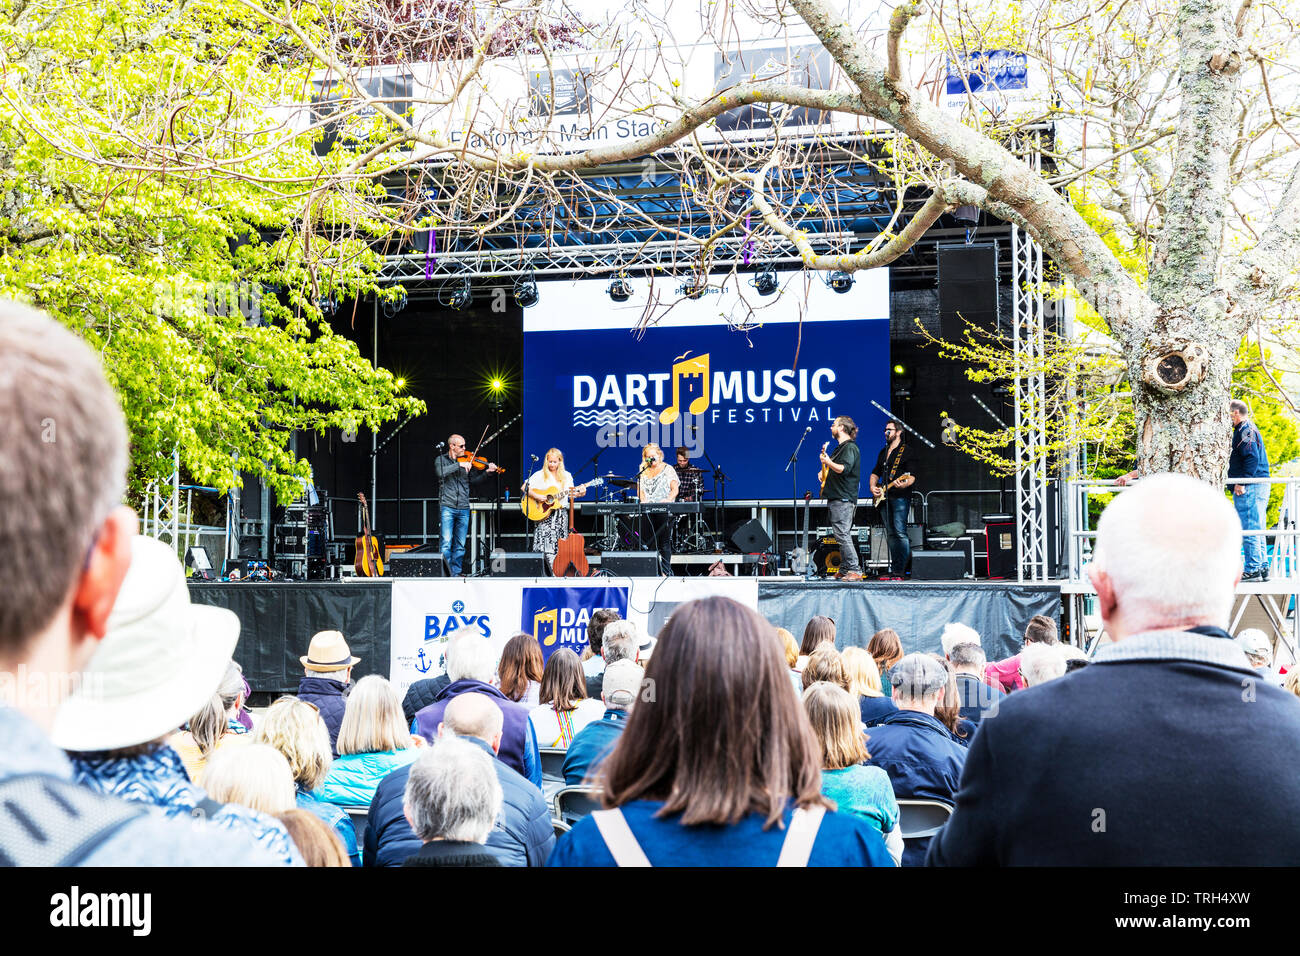 Dart music festival Dartmouth, Devon, Regno Unito, Inghilterra, stadio di musica, gruppo sul palco, concerto, gigging, festival, stadio stadio all'aperto, banda sul palco, Dartmouth Foto Stock